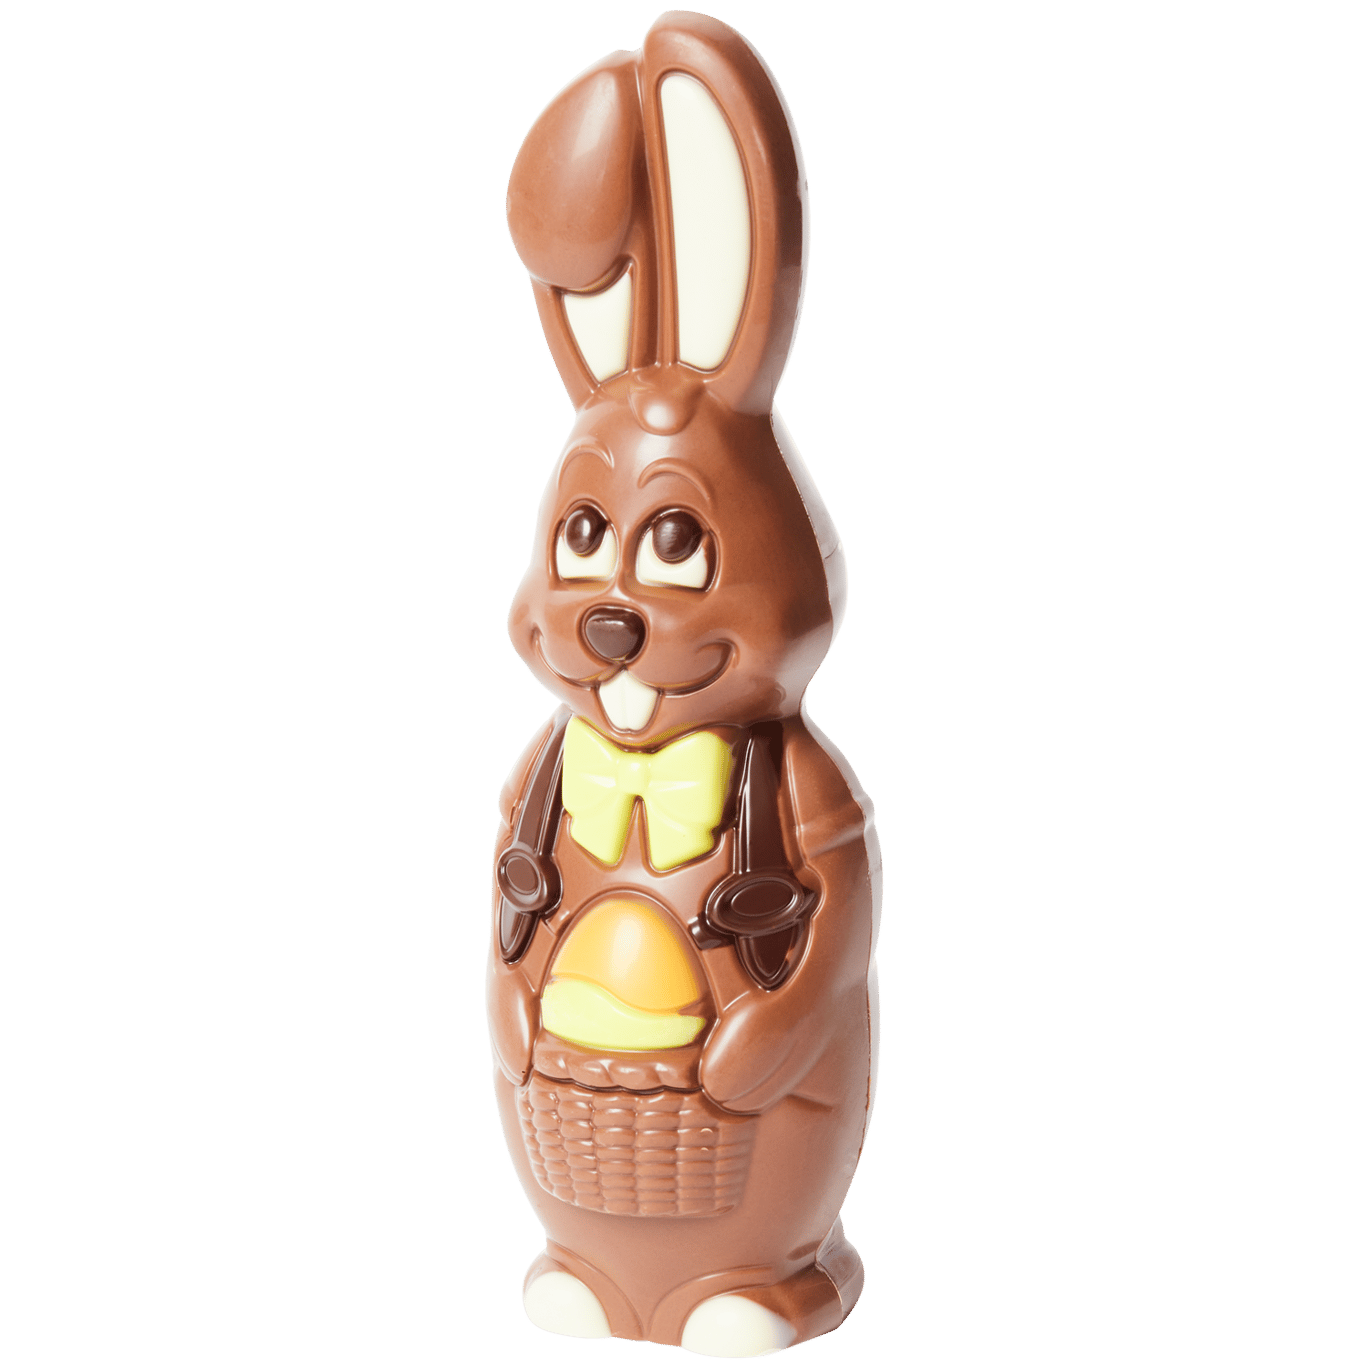 Coelho da Páscoa de chocolate Easter Moments